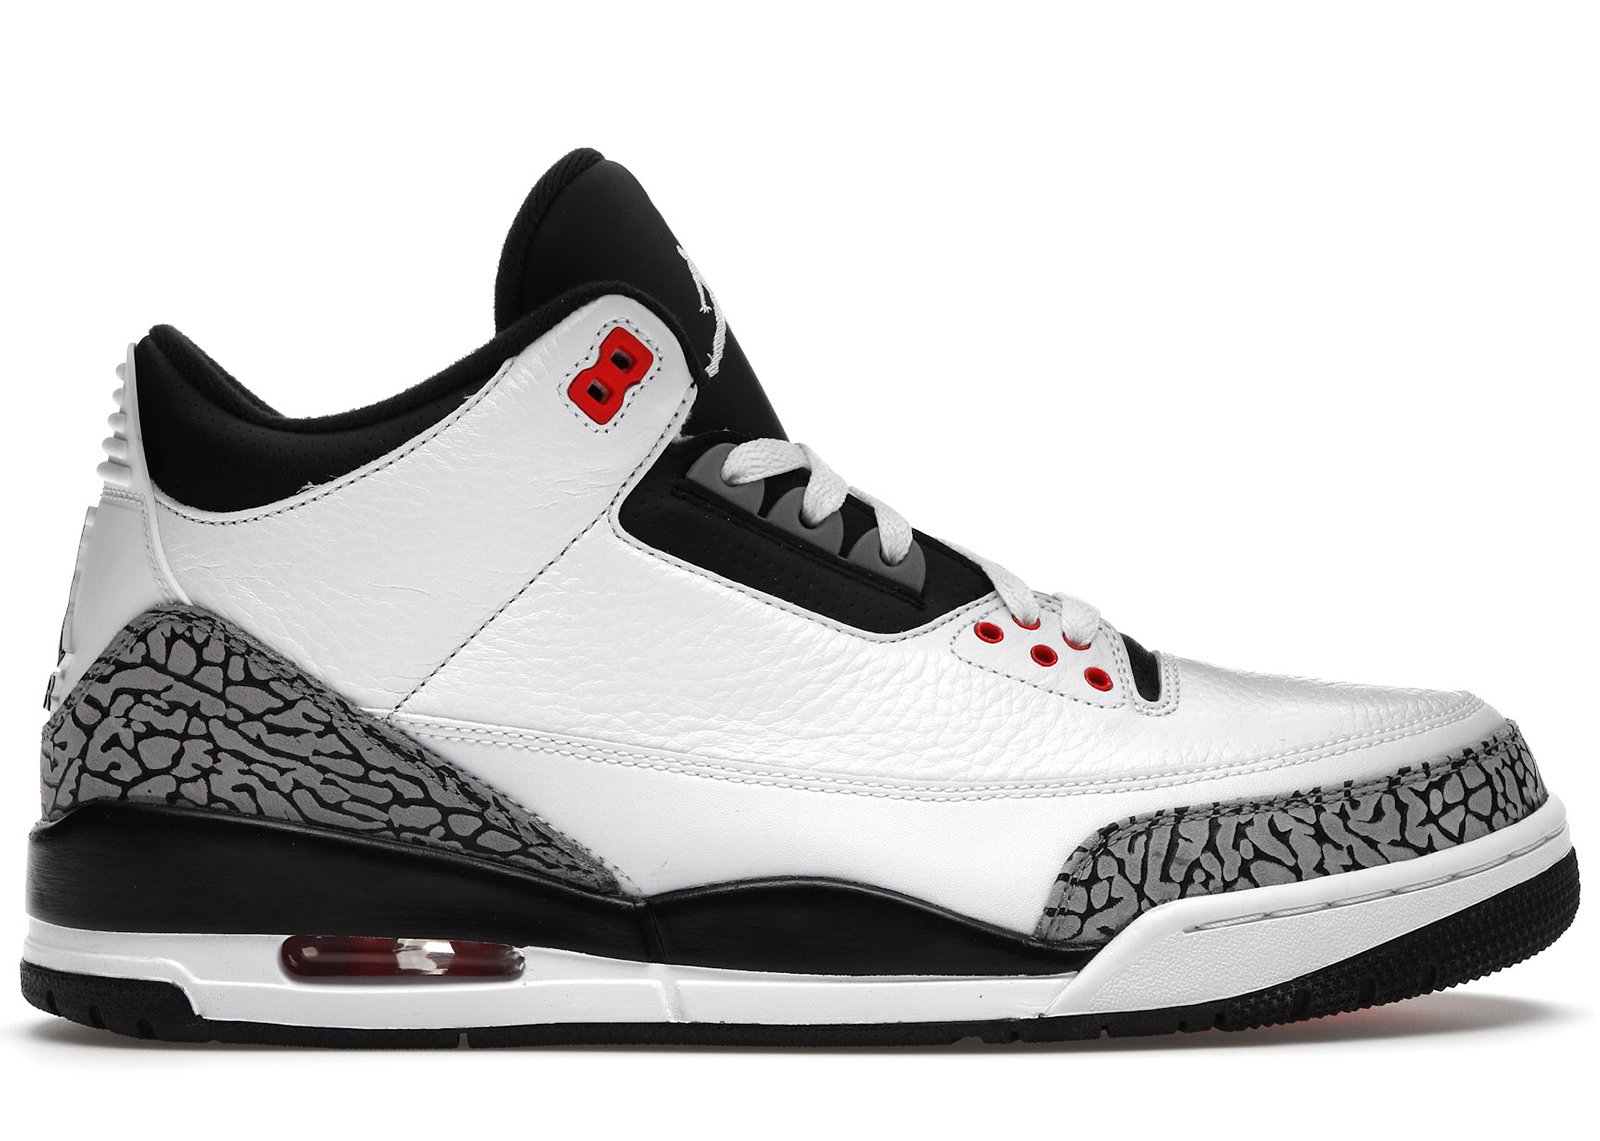 Jordan 3 Retro Infrared 23 sneakers